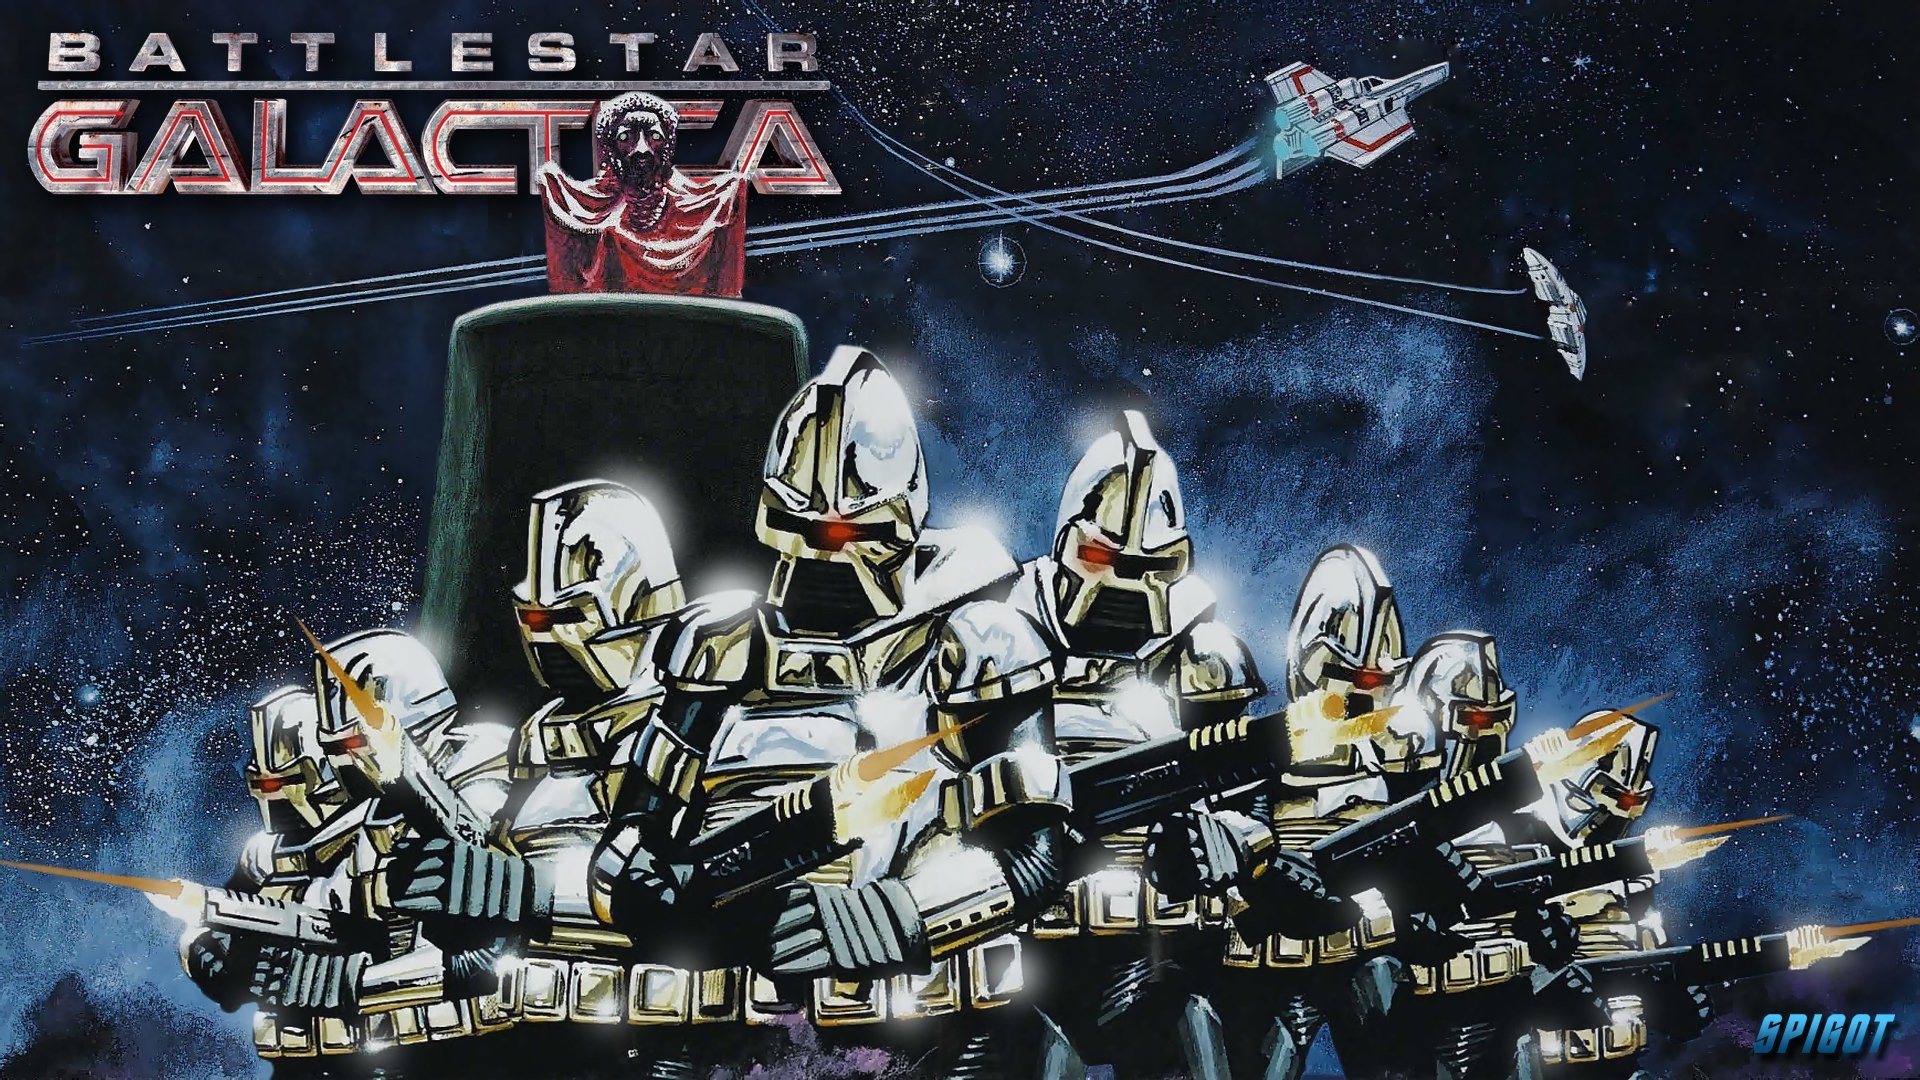 1920x1080 TV Show - Battlestar Galactica (1978) Wallpaper